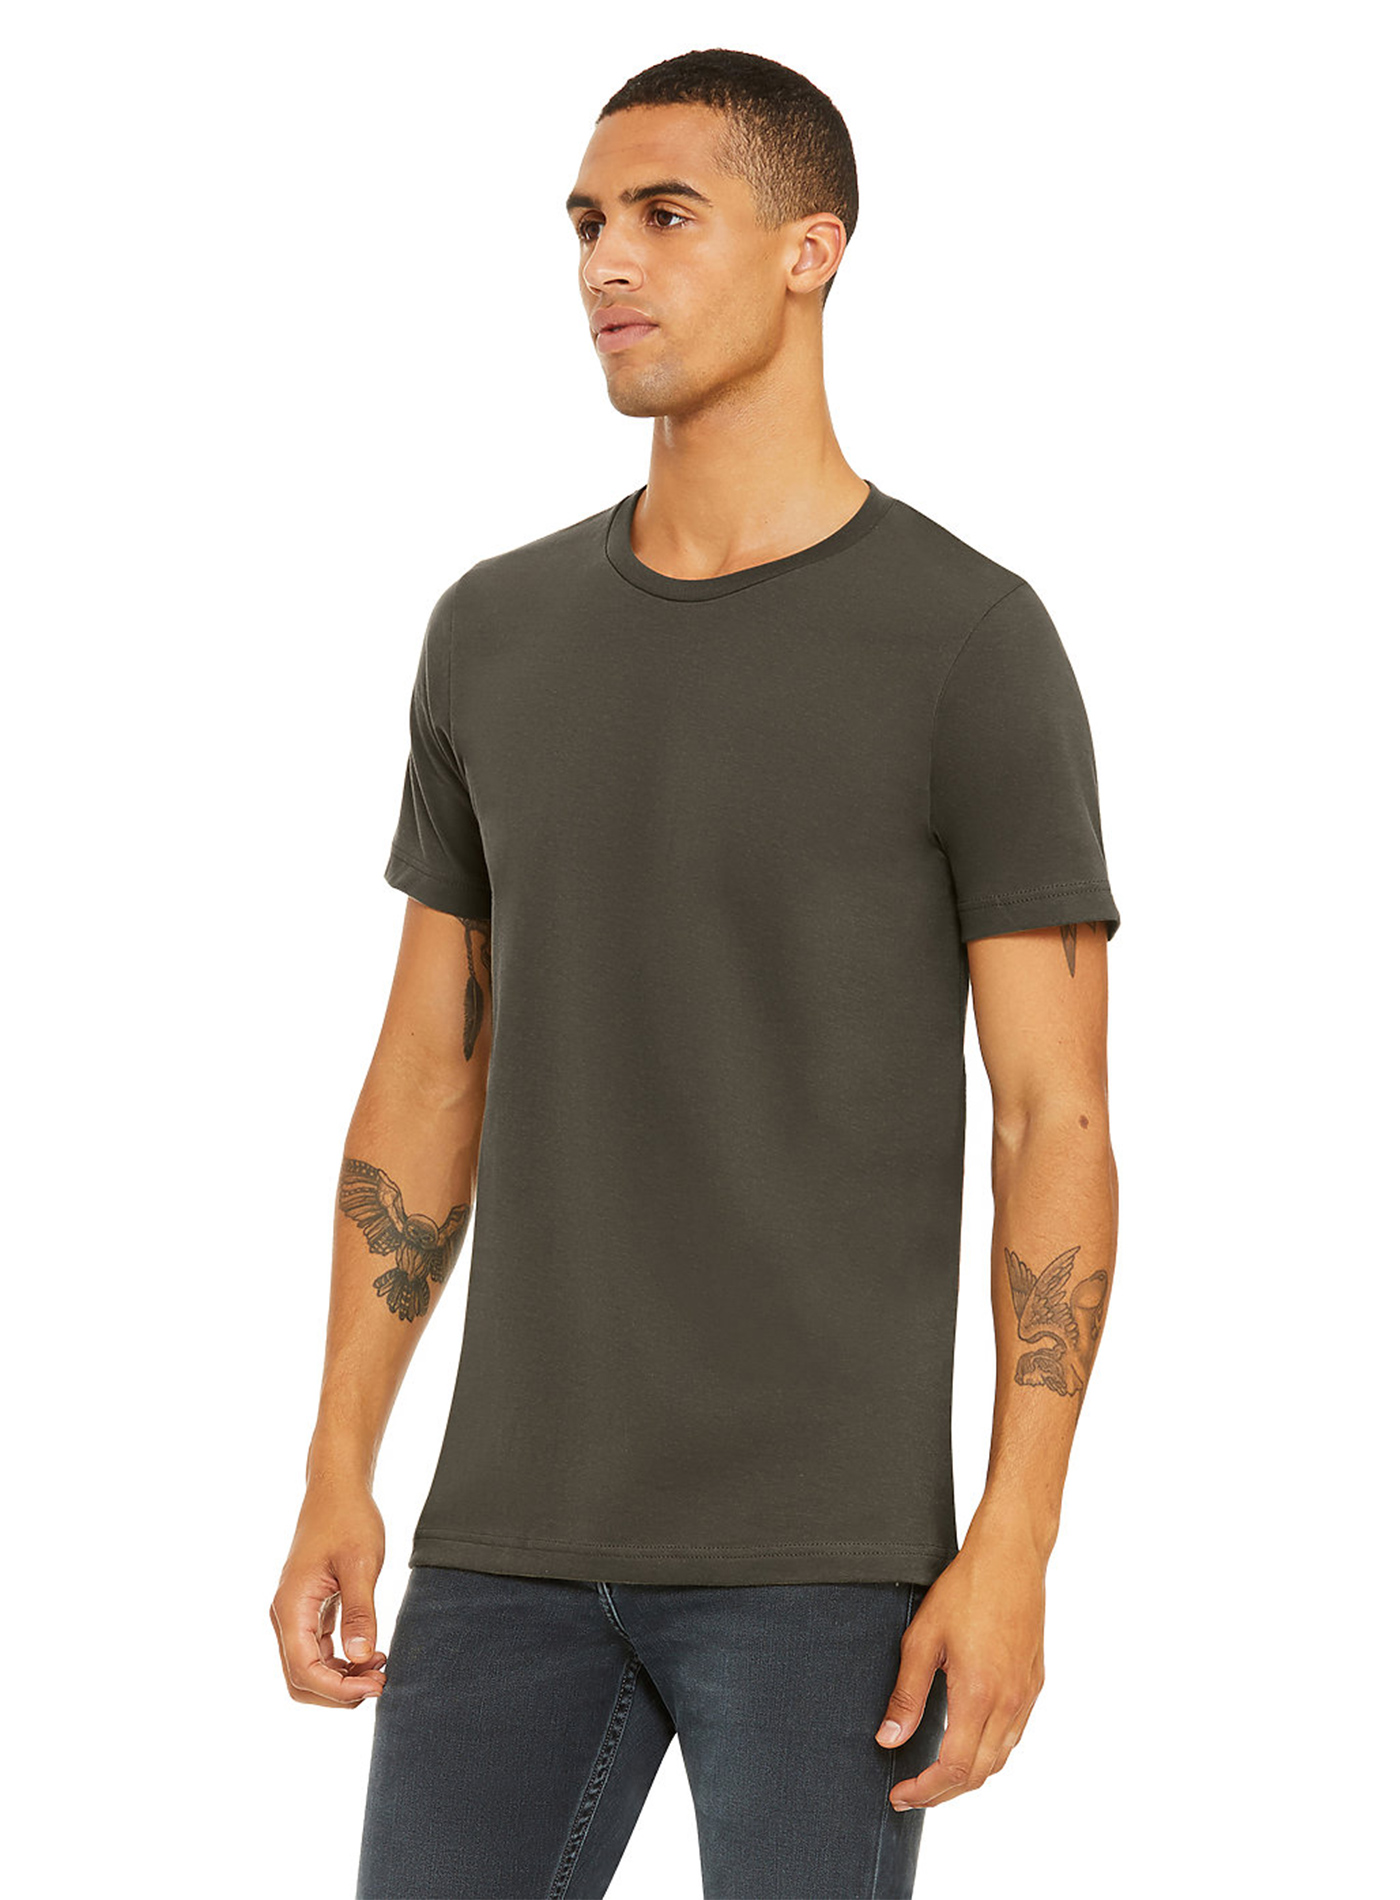 Unisex tričko Jersey - Vojenská zelená M